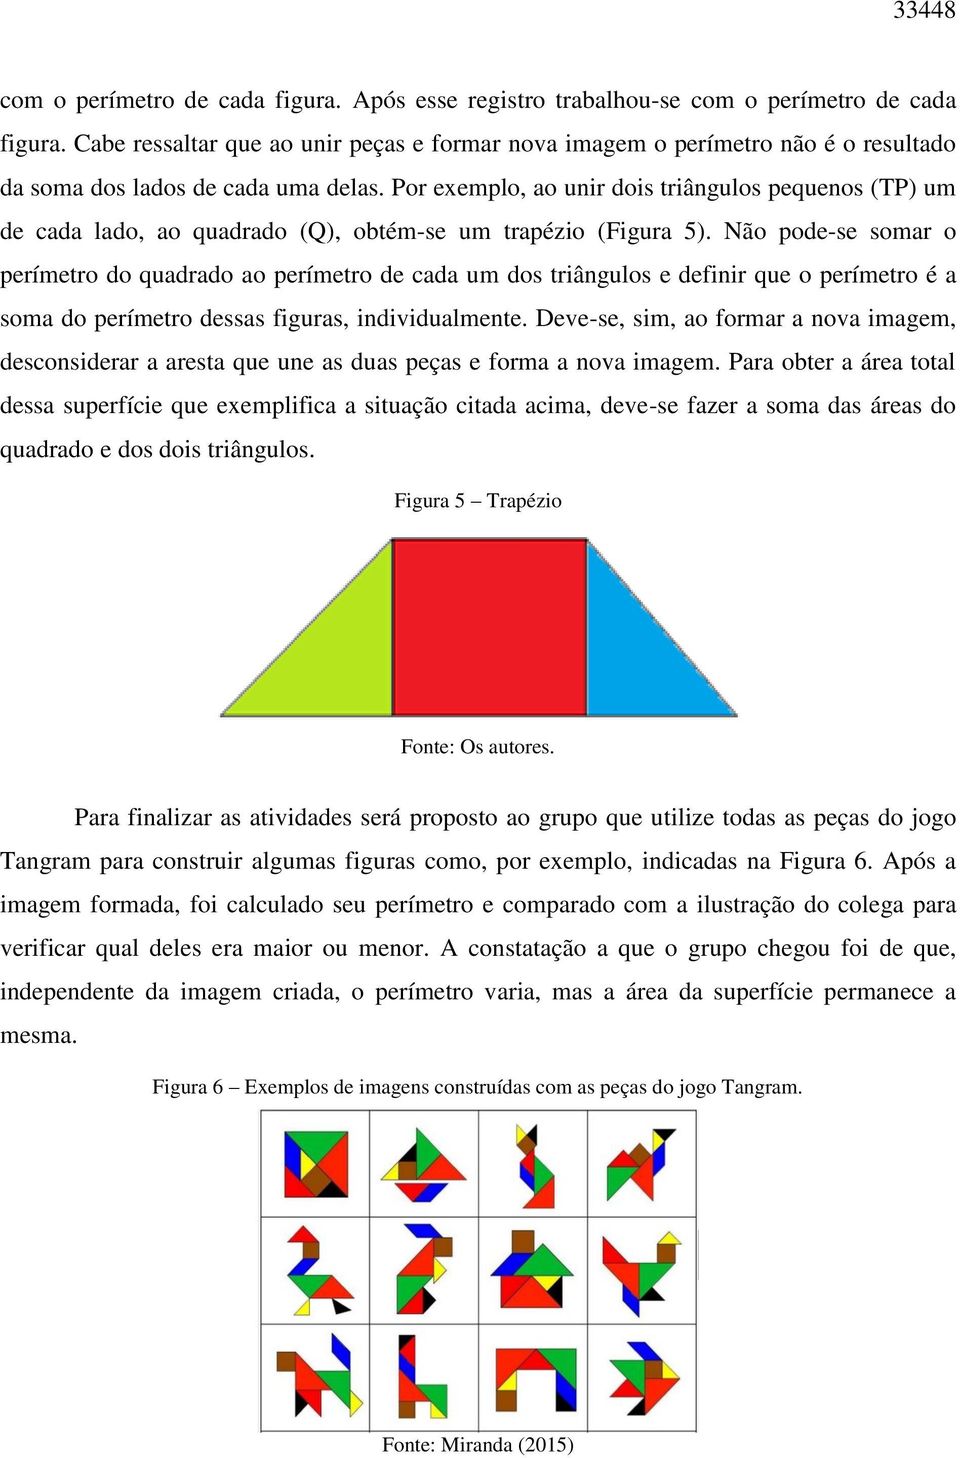 Por exemplo, ao unir dois triângulos pequenos (TP) um de cada lado, ao quadrado (Q), obtém-se um trapézio (Figura 5).